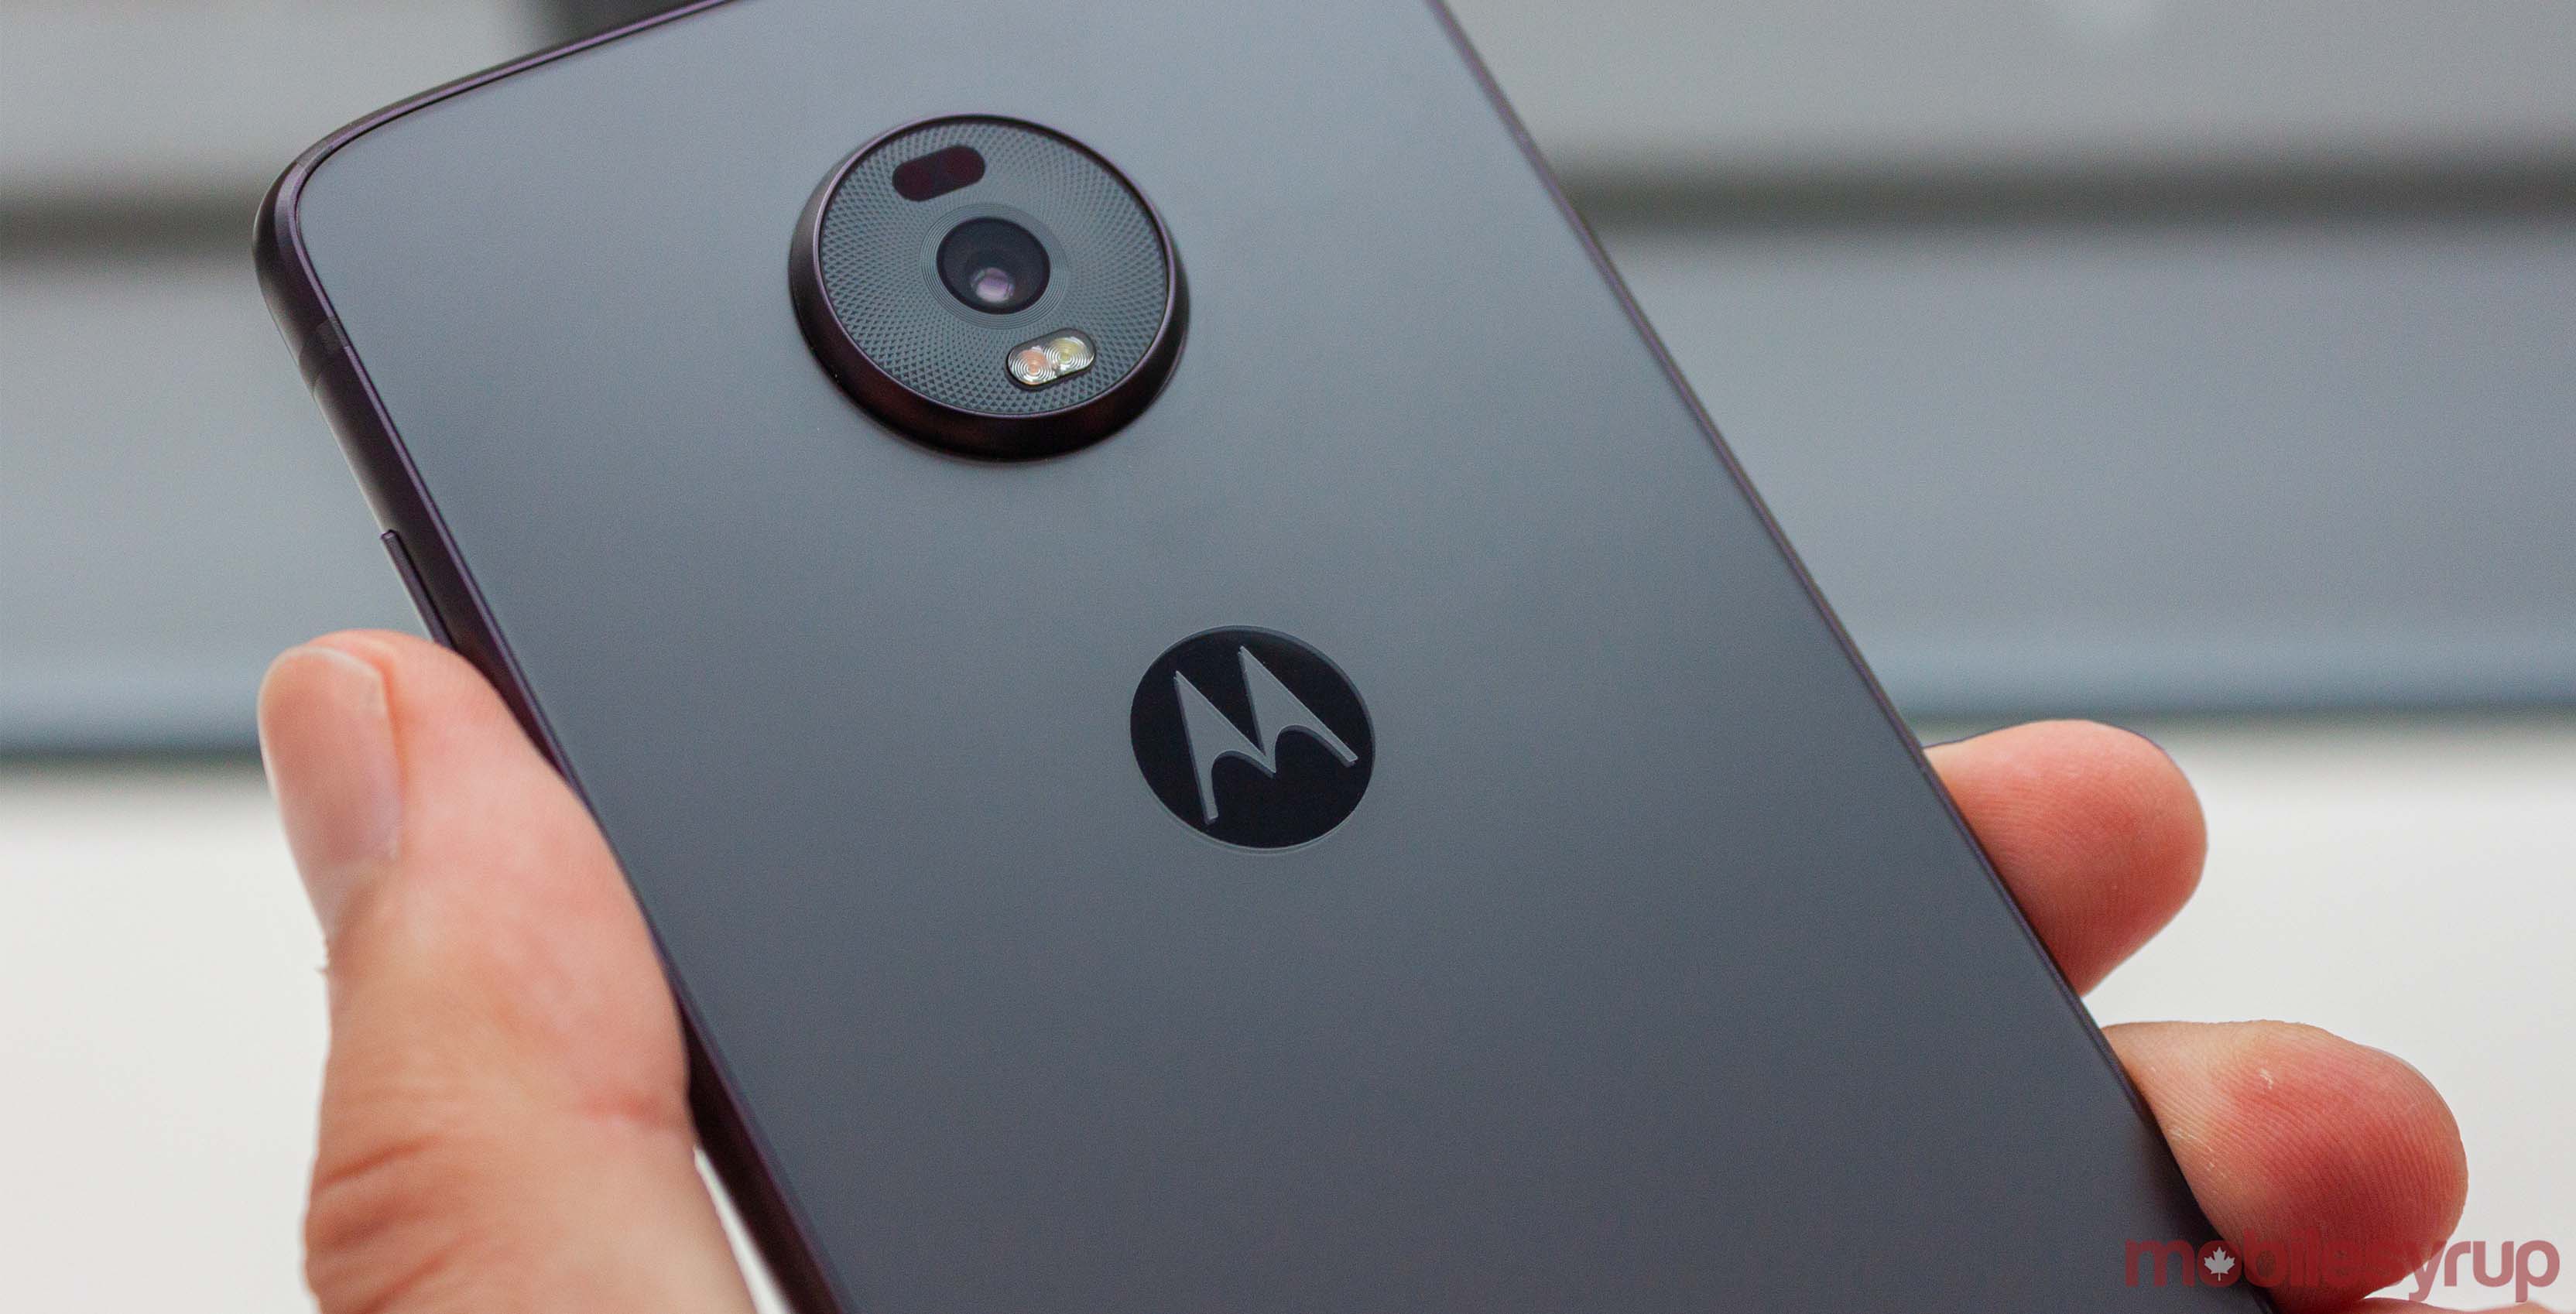 Єдиний цього року: Motorola не випускатиме Moto Z4 Play або Moto Z4 Force